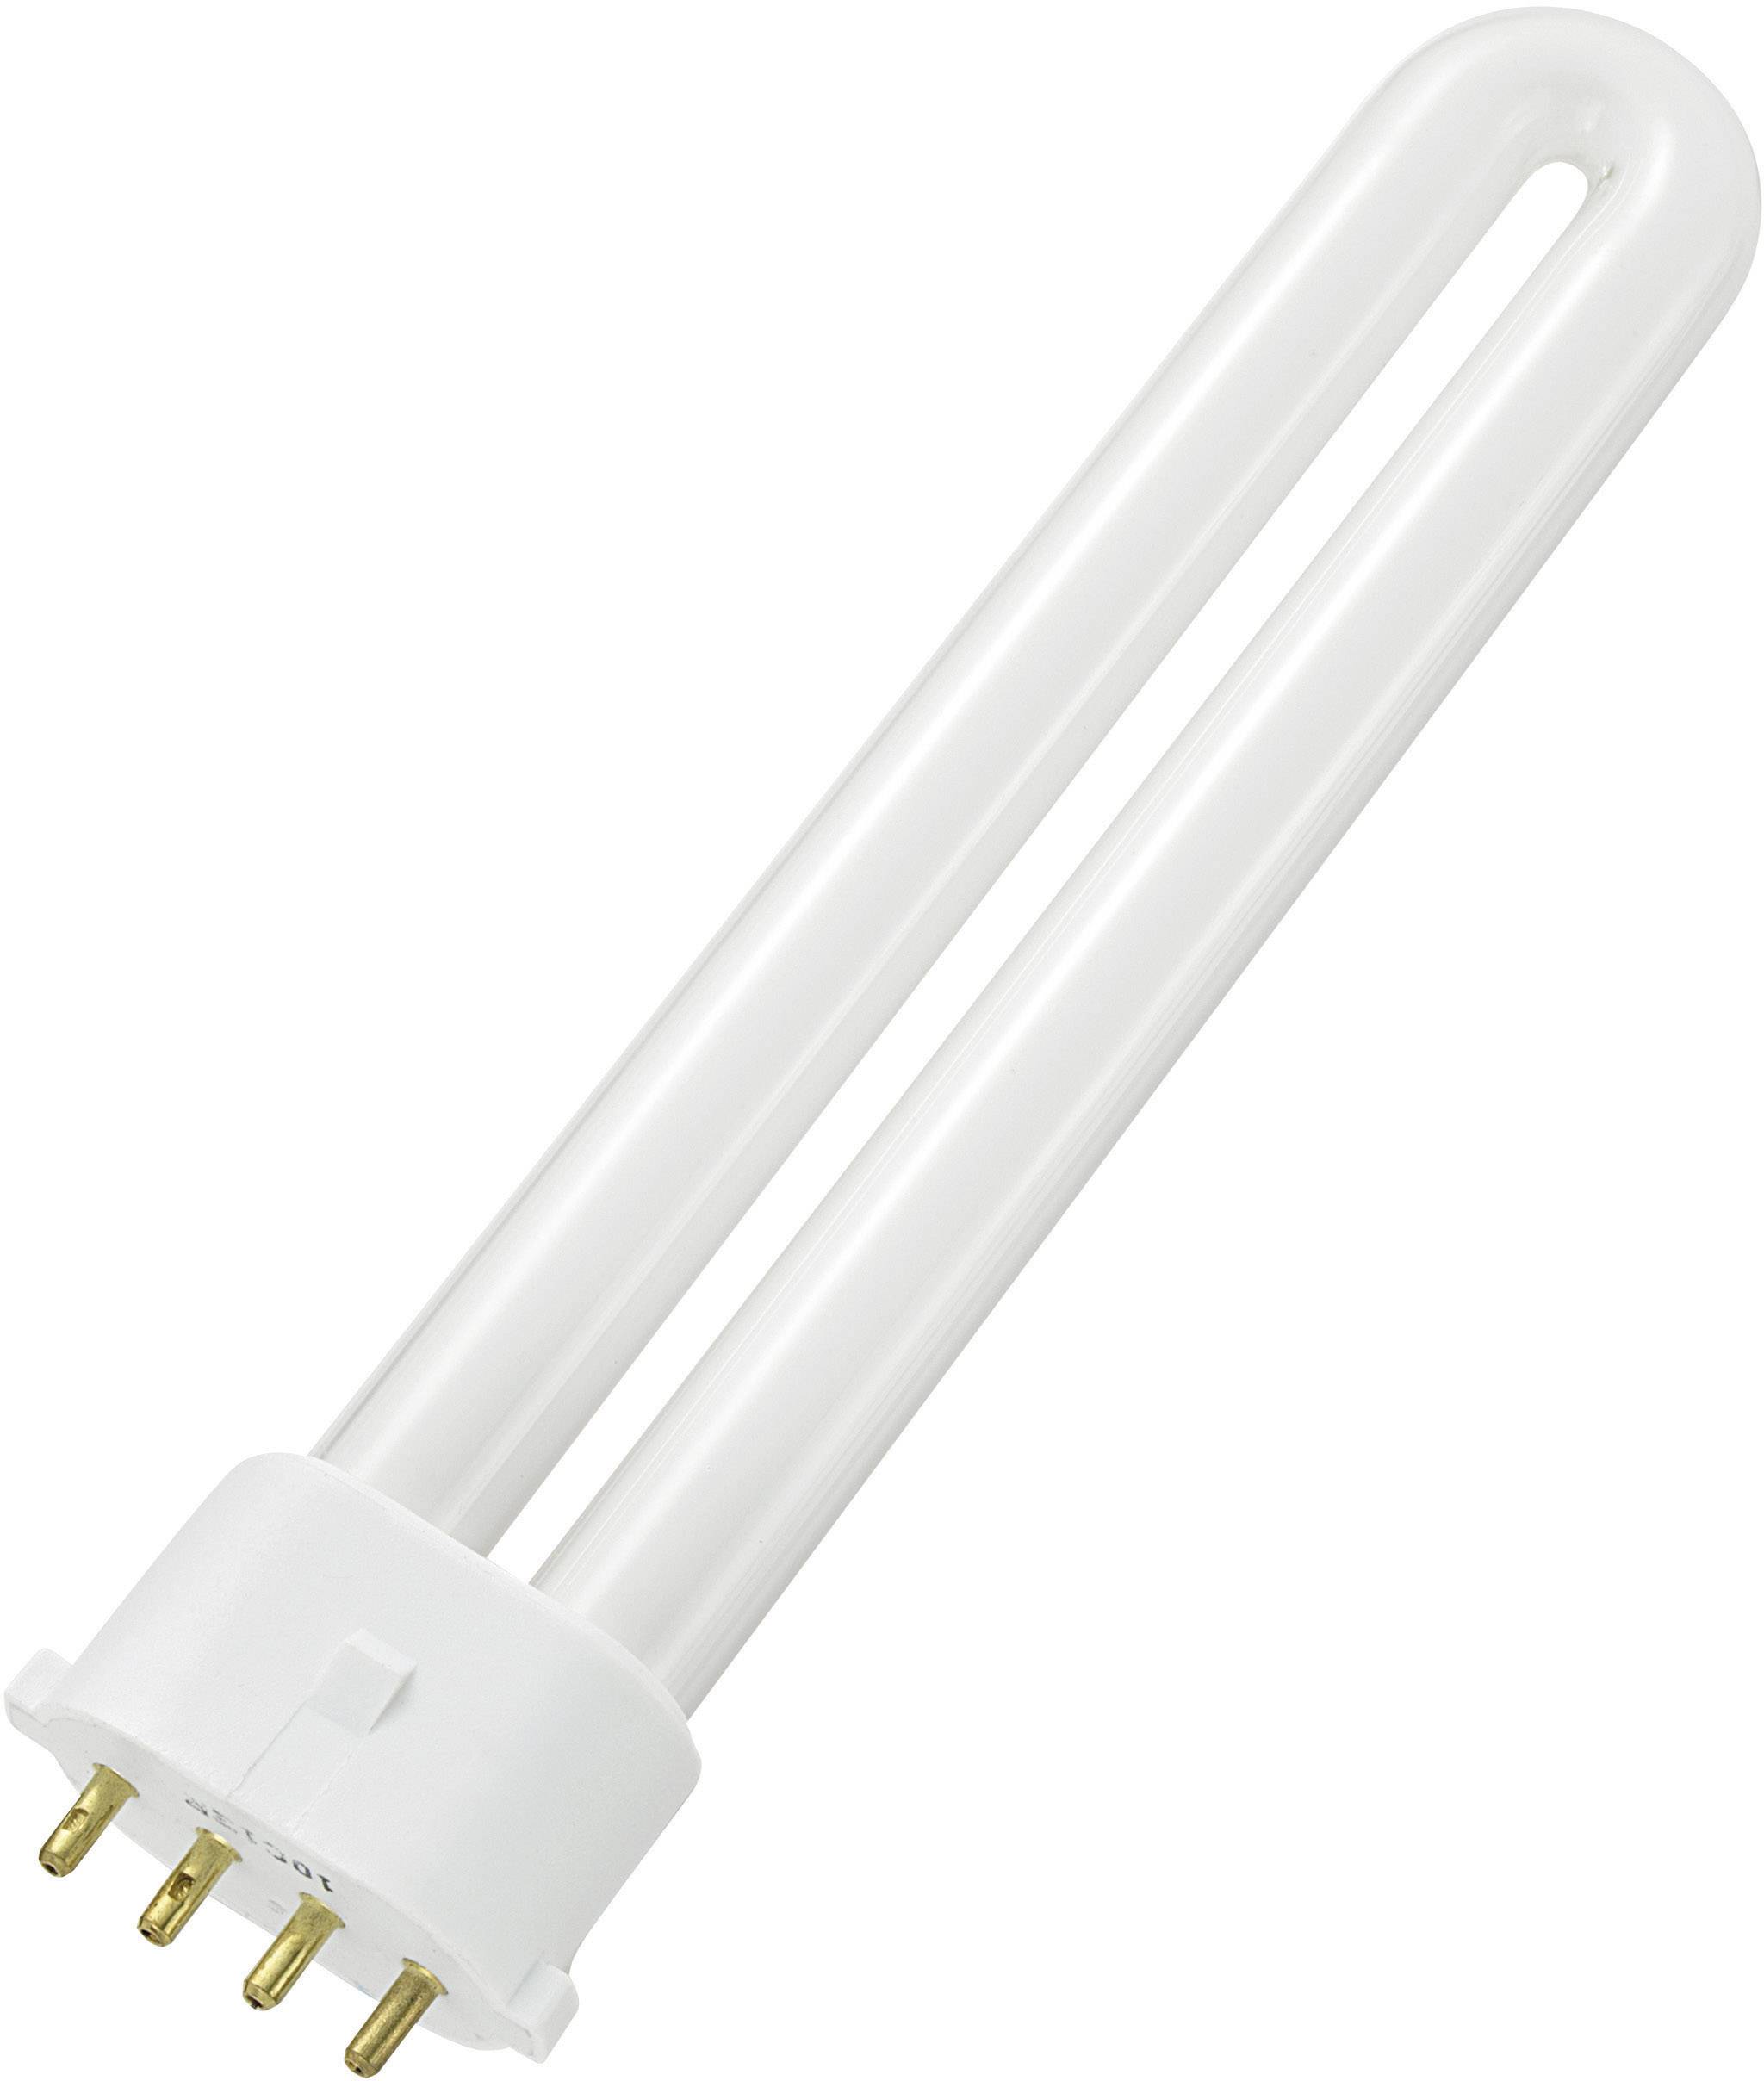 Ch light. Лампа FLS/E 7w 6400k. FLS/E 5w 6400k лампа для фонаря. Лампа pl 9w 6400k. Компактная люминесцентная лампа 6w 6400k.